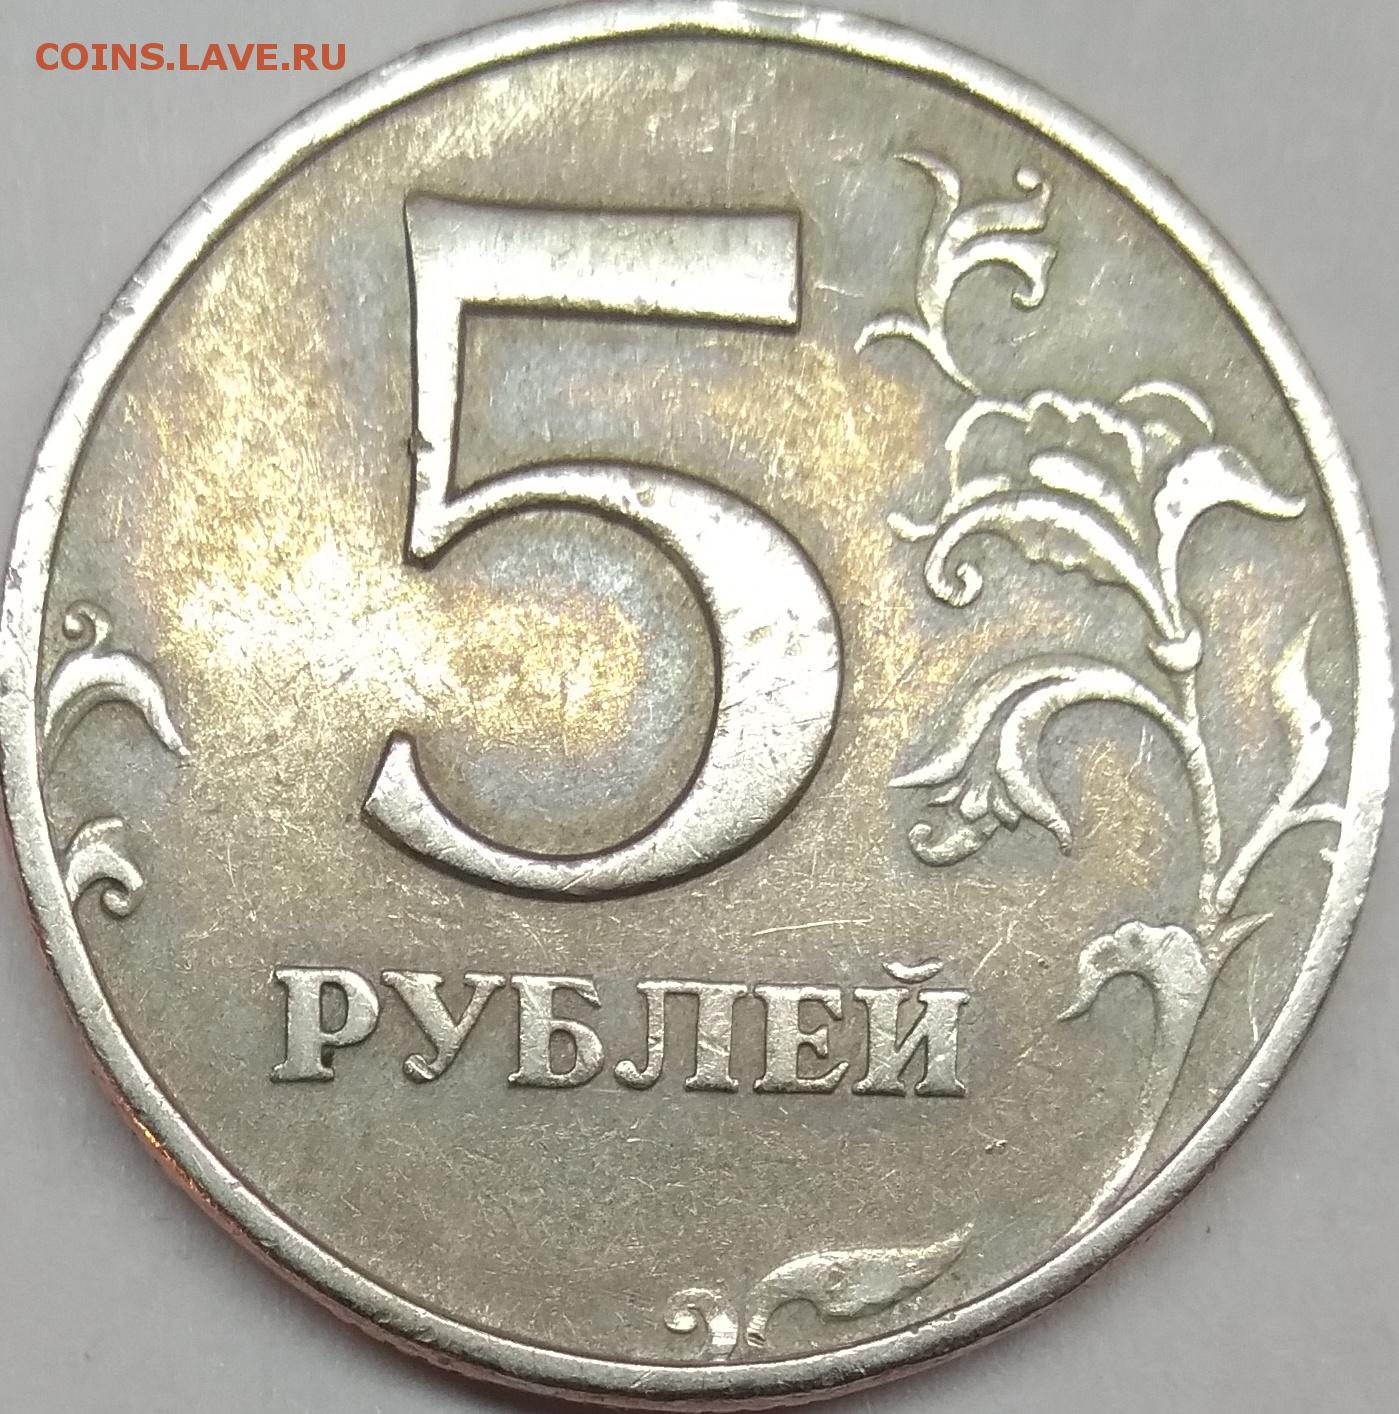 5 рублей ценные года. ММД монеты 1997-1998. 5 Рублей 1997 ММД. Монета 5 рублей 1997 ММД. 5 Рублей 1997 ММД Медно-алюминиевая.